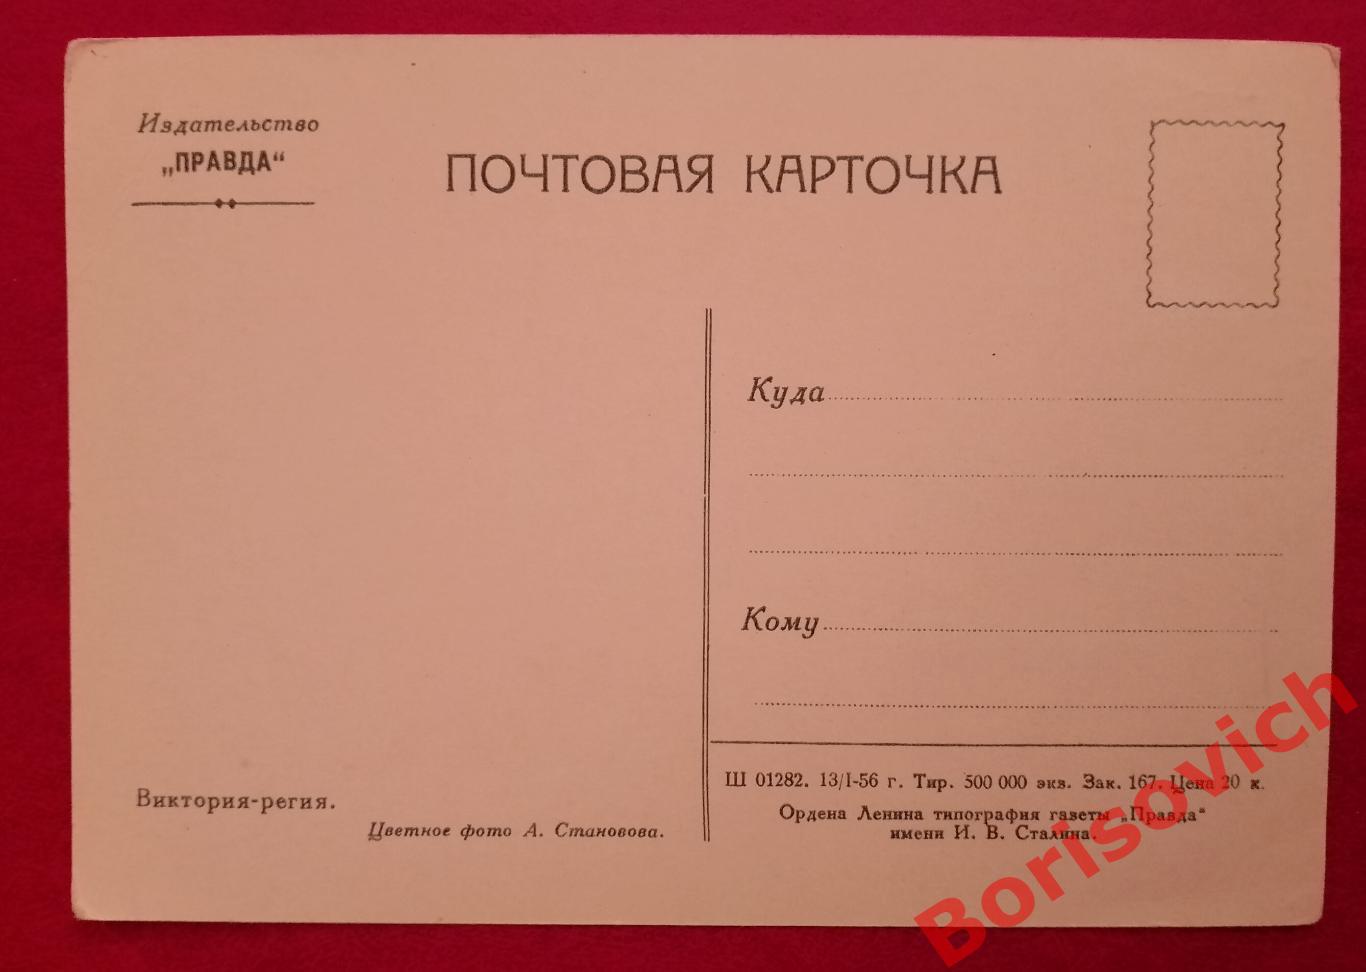 Почтовая карточка Виктория-регия Цветное фото А. Становова 1956 г 1